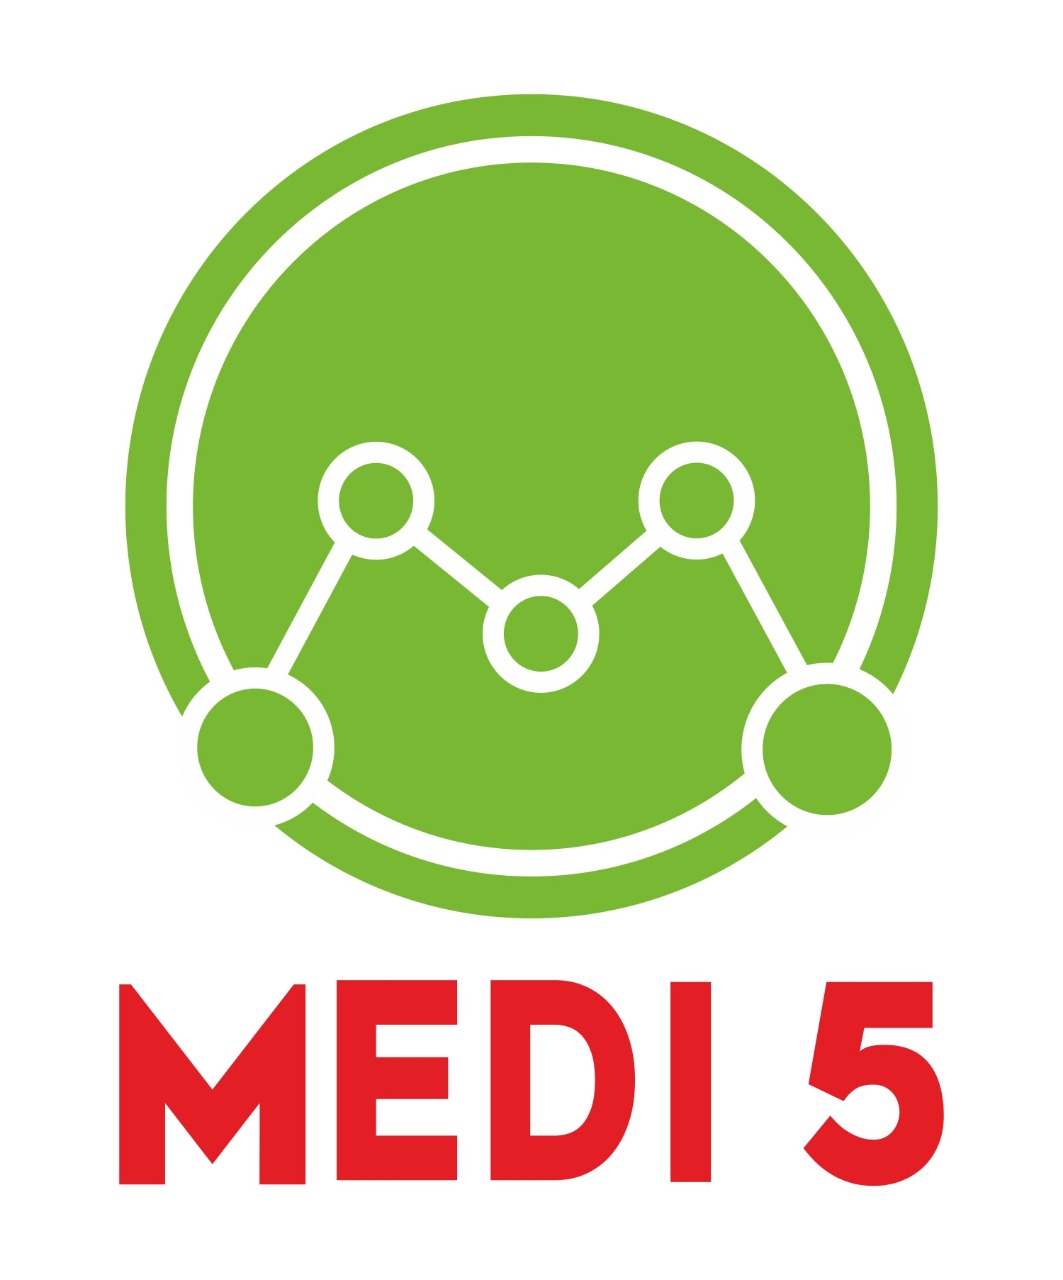 Medi5